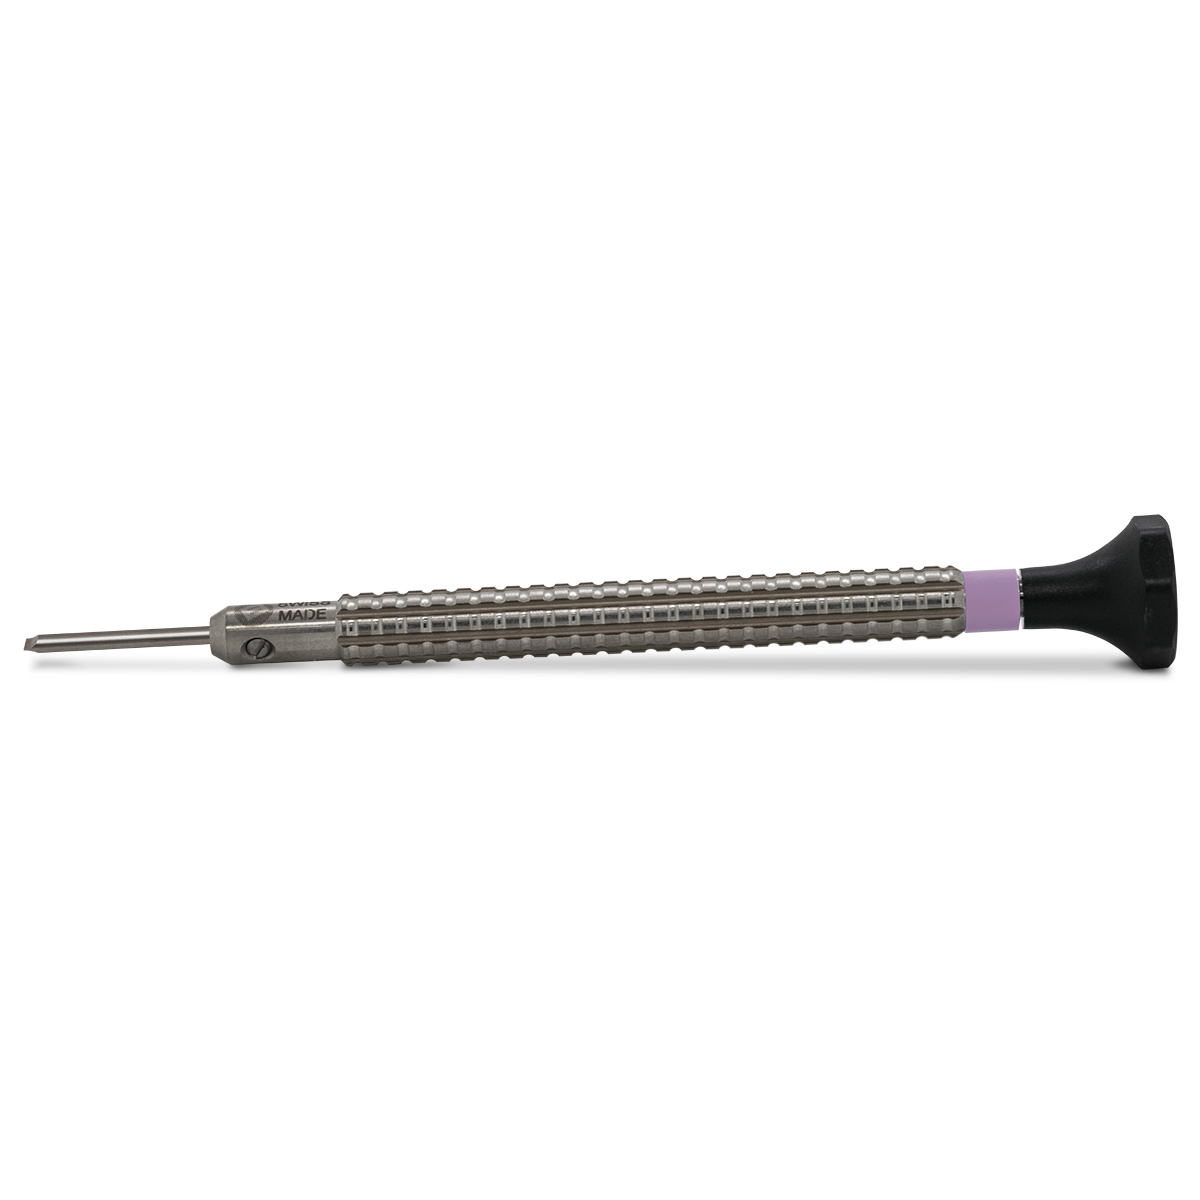 Bergeon 7965-MFP-160 Schraubendreher, Klinge 1,6 mm, Parallelschliff, violett, für Drehmomenttrommeln